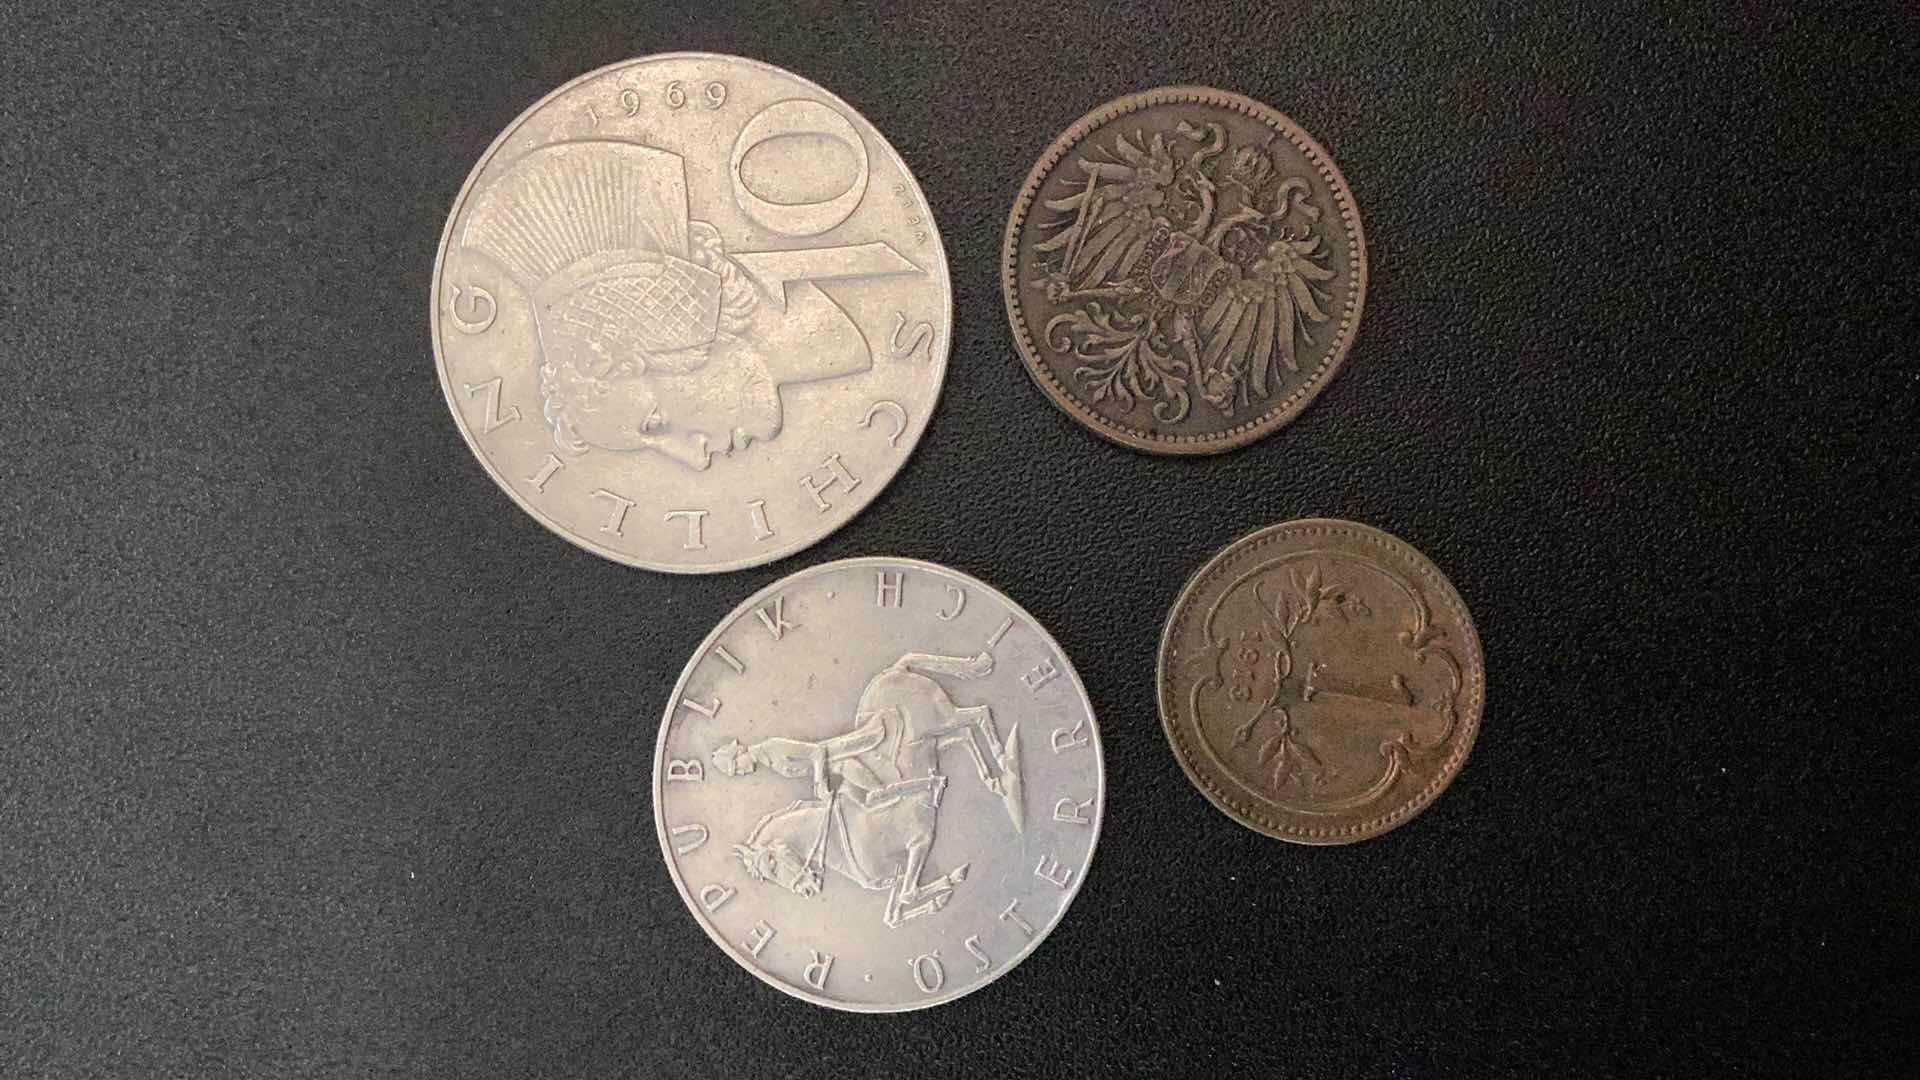 Photo 2 of 4 COLLECTIBLE COINS - AUSTRIA 1913, 1914, 1961, 1967